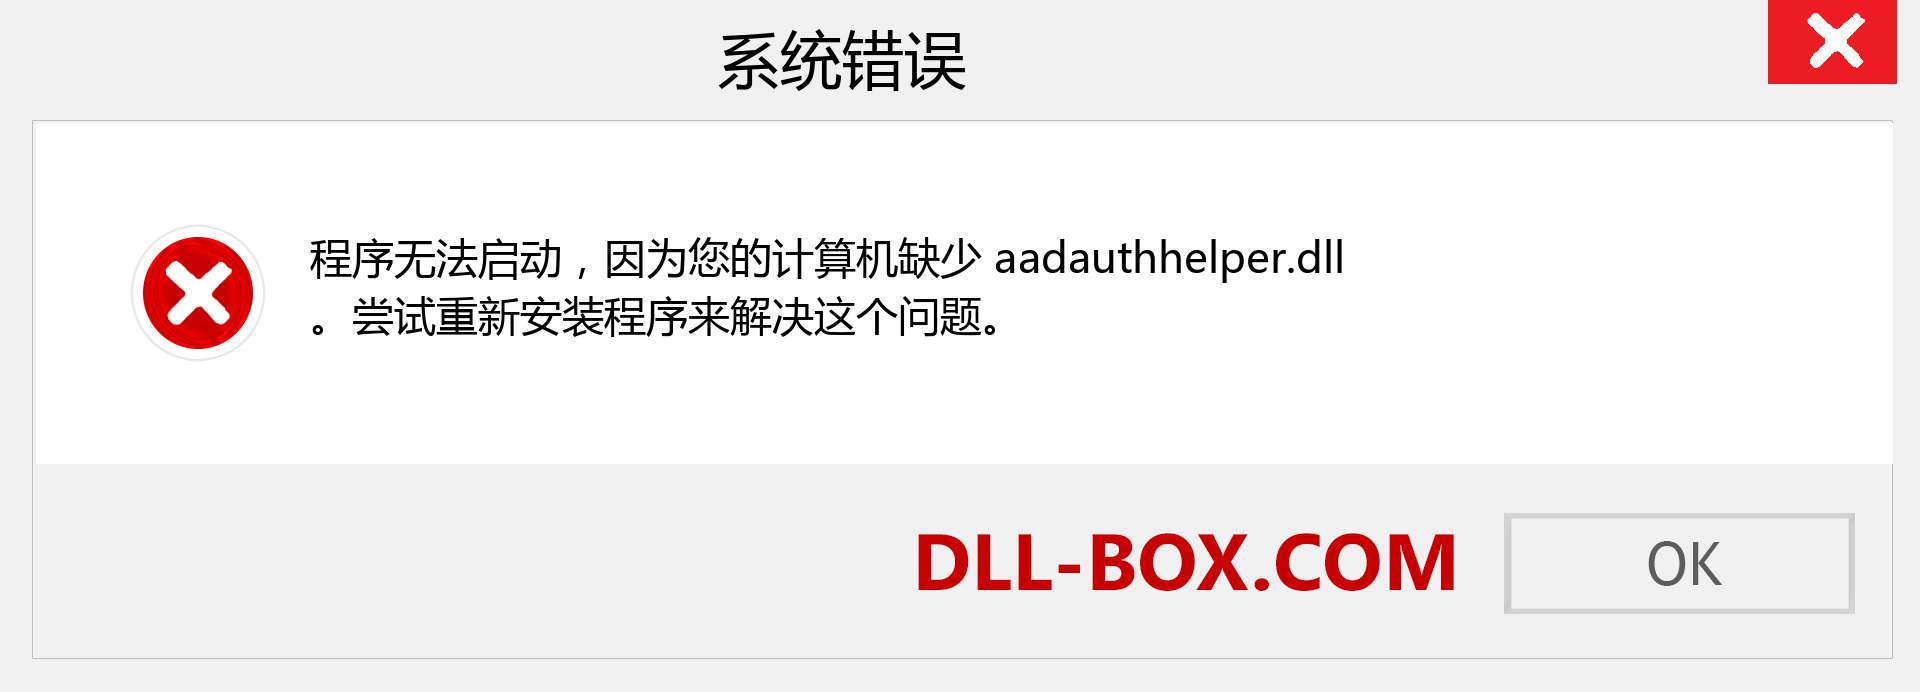 aadauthhelper.dll 文件丢失？。 适用于 Windows 7、8、10 的下载 - 修复 Windows、照片、图像上的 aadauthhelper dll 丢失错误